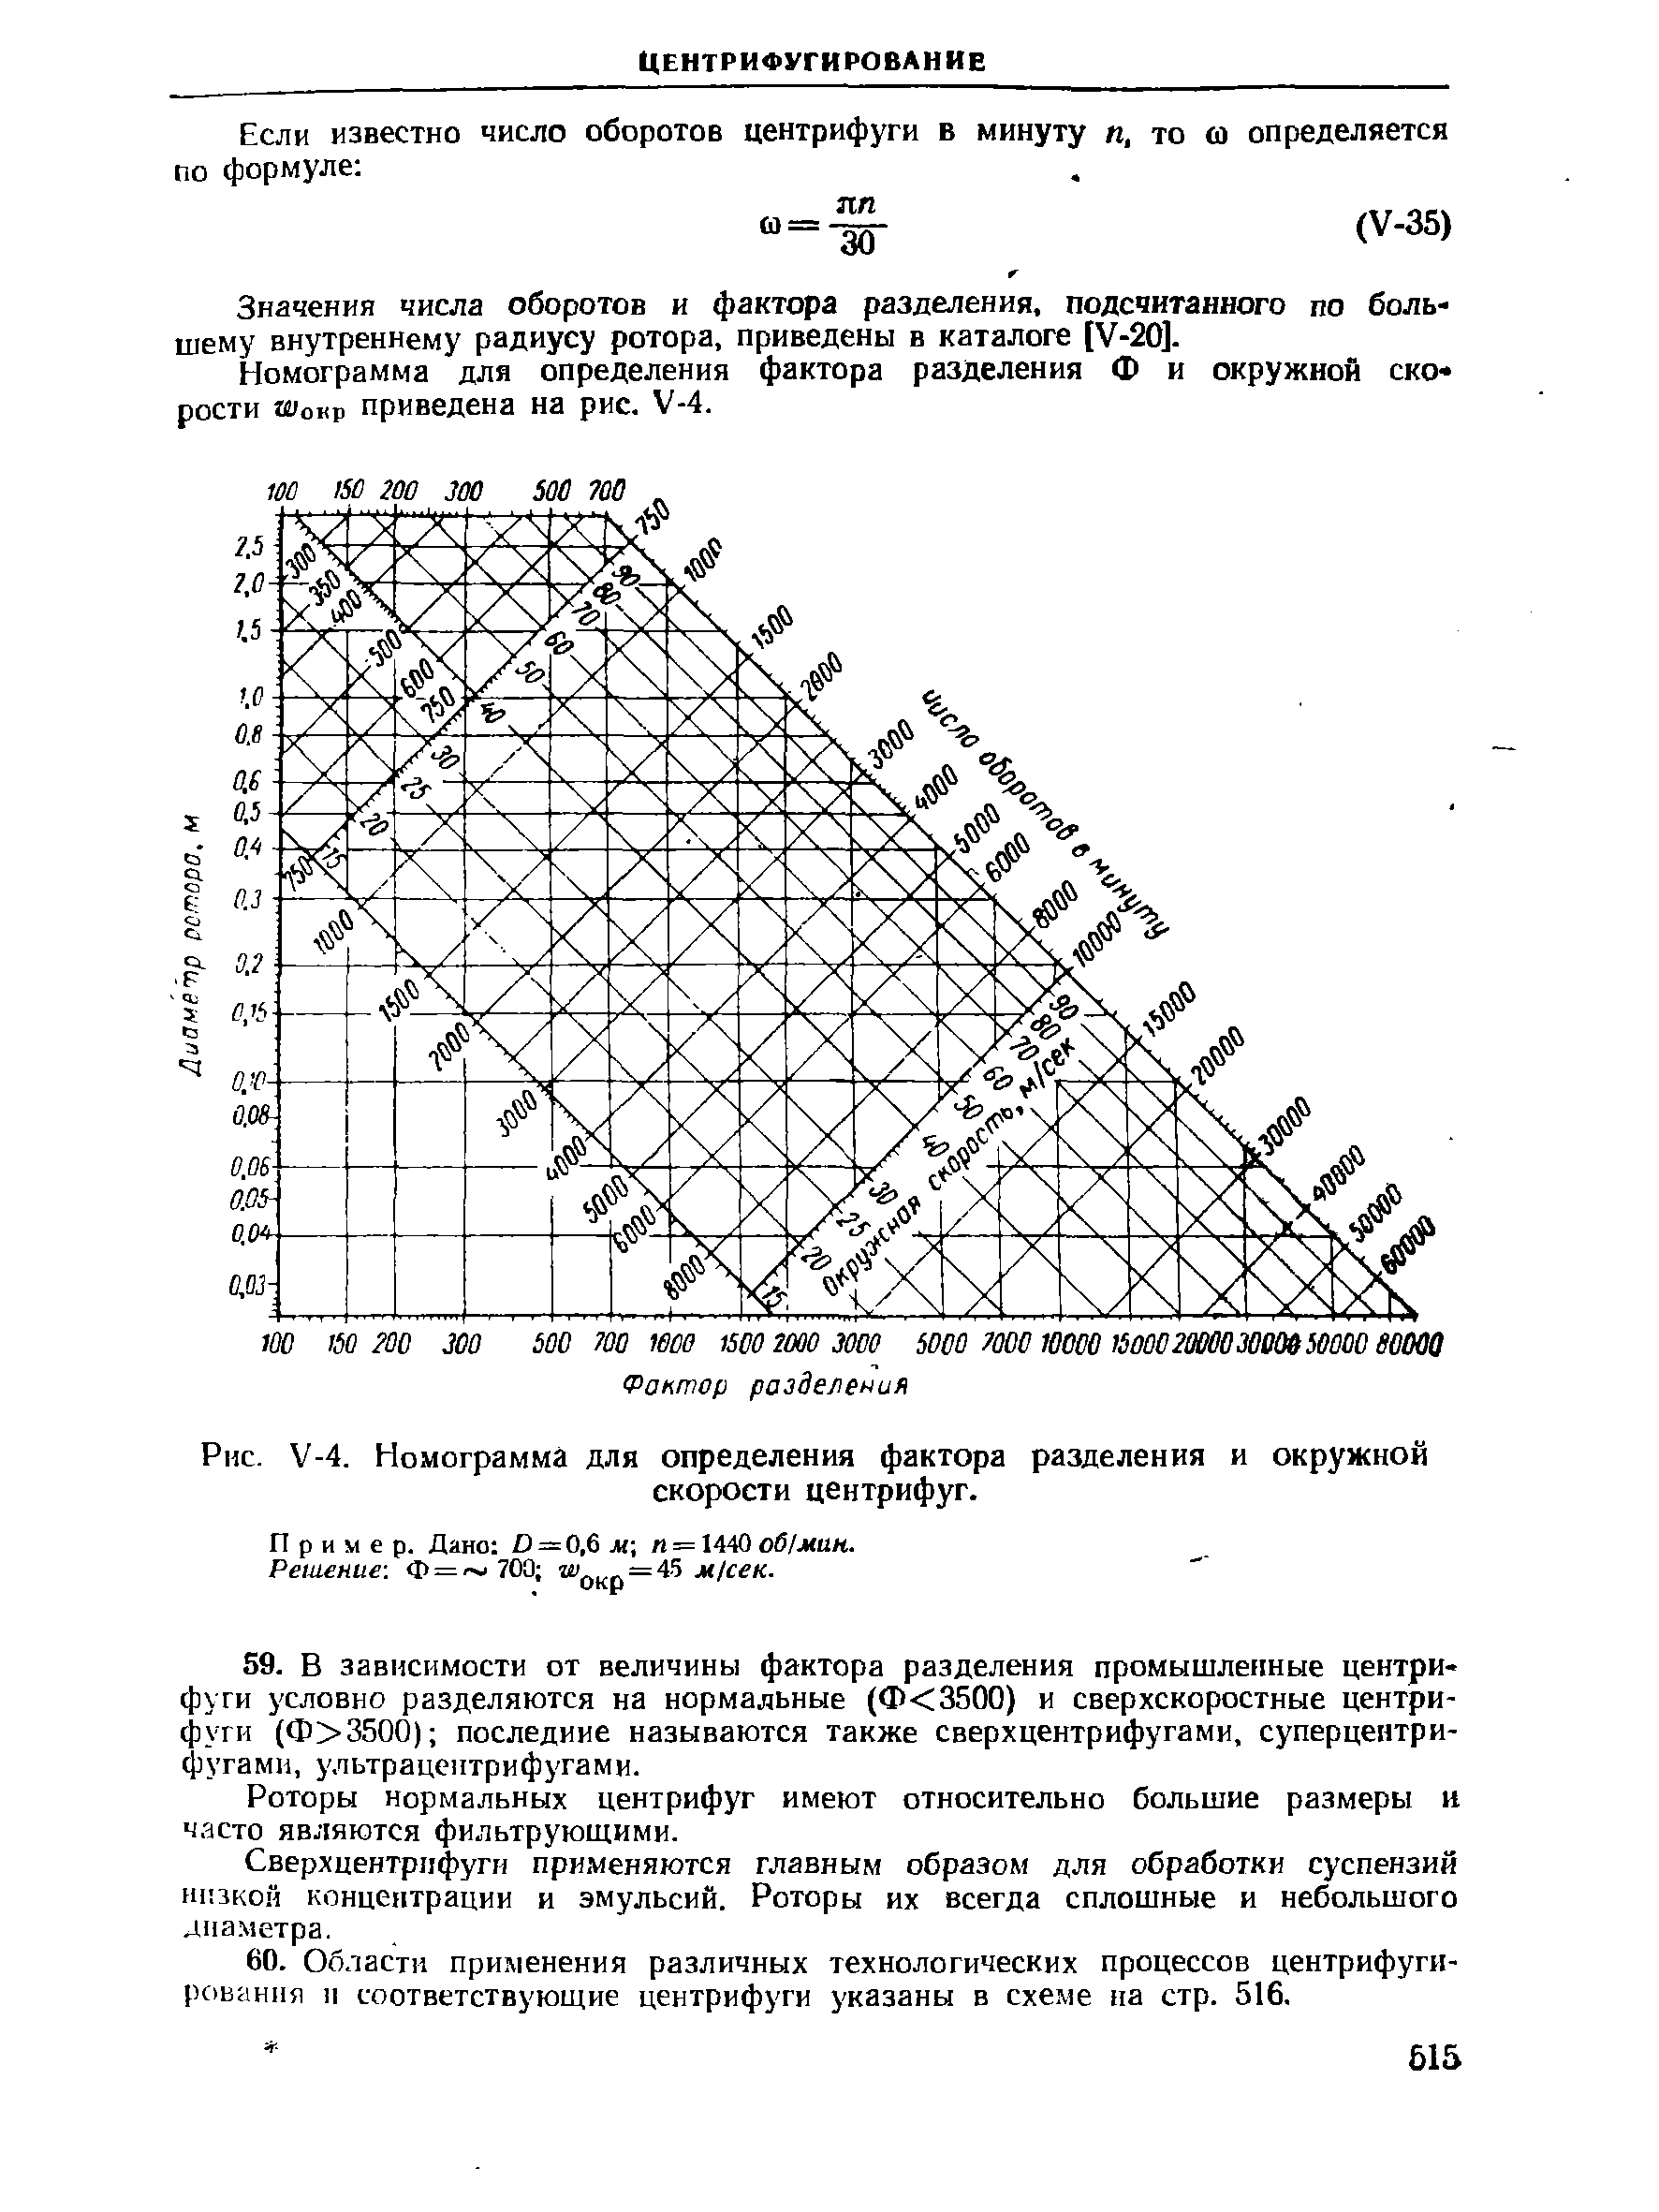 Значения числа оборотов и фактора разделения, подсчитанного по большему внутреннему радиусу ротора, приведены в каталоге [У-20].